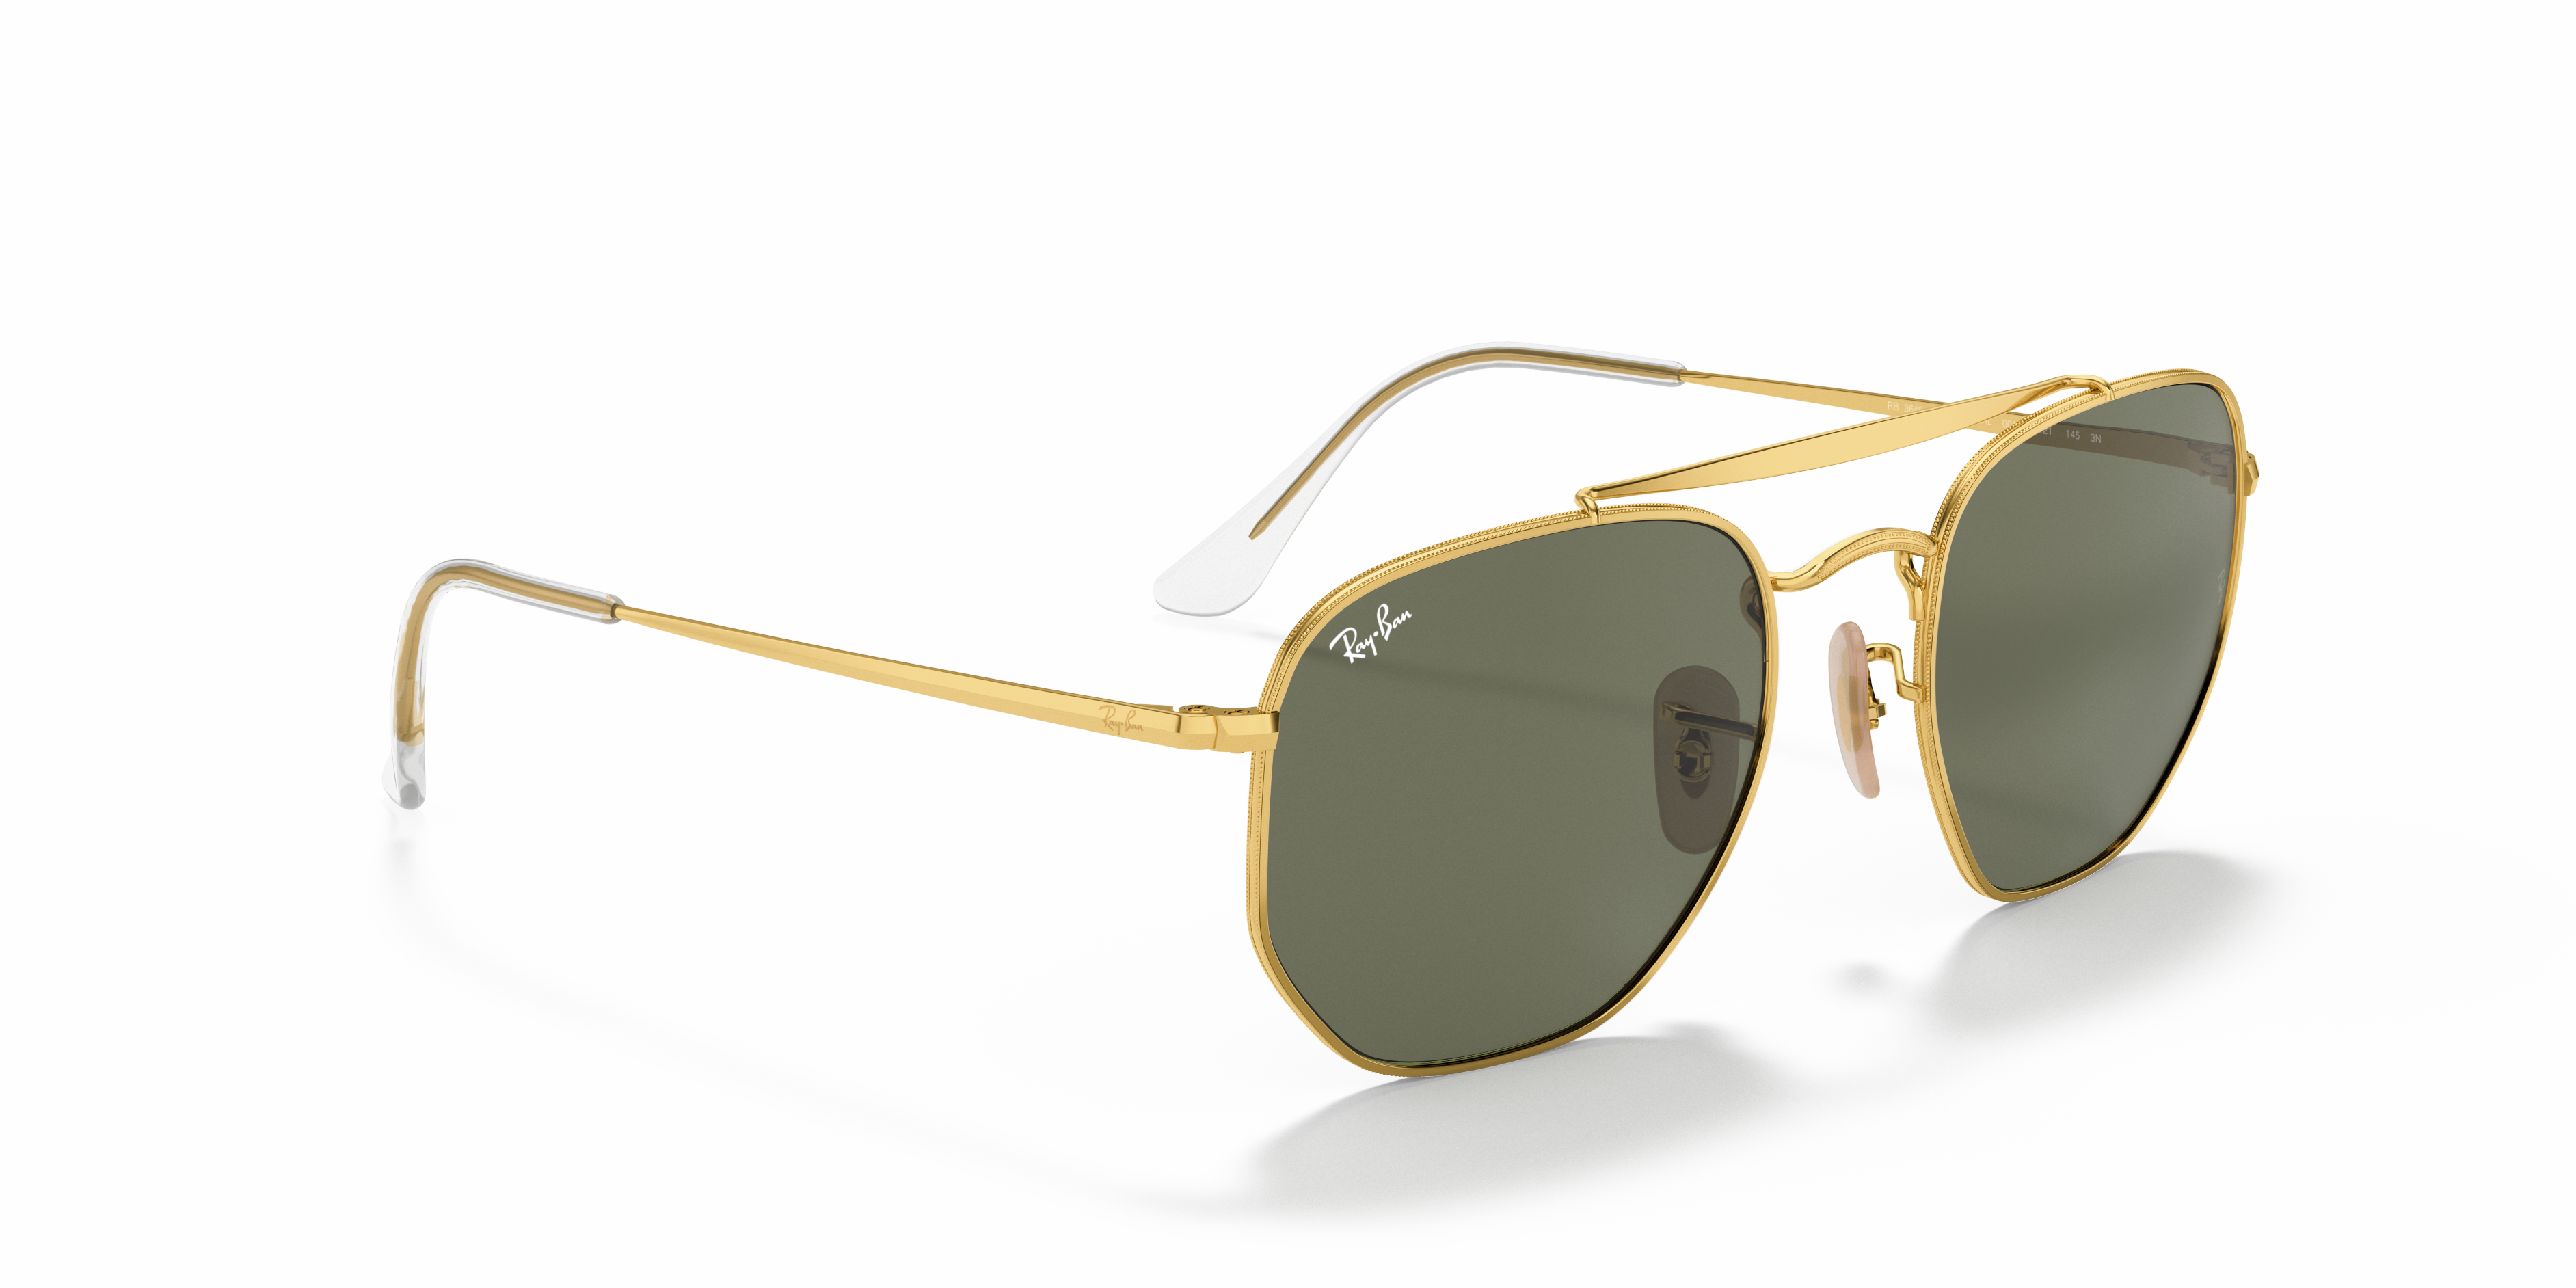 Sunglasses RAY-BAN golden Women Accessories Ray-Ban Women Sunglasses Ray-Ban Women Sunglasses Ray-Ban Women 